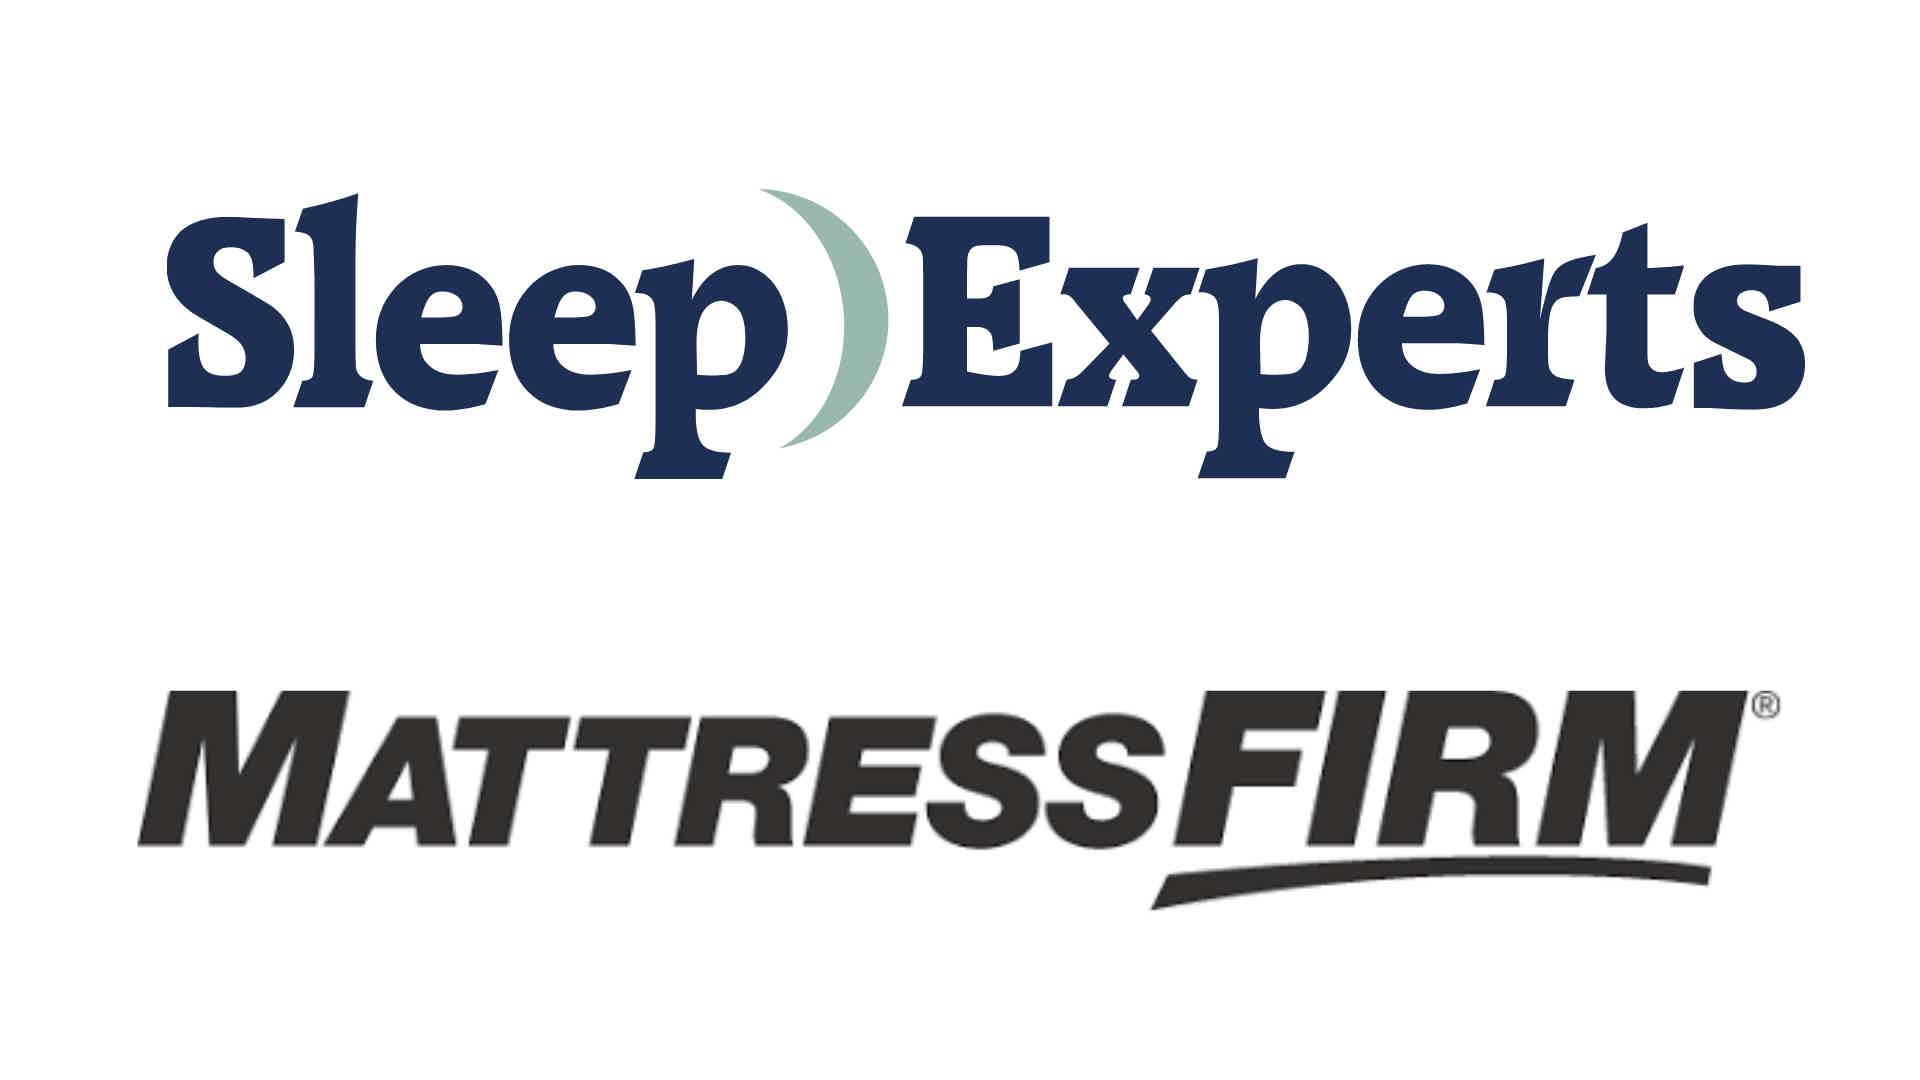 Cartão de crédito Sleep Experts ou Mattress Firm? Fonte: Mattress Firm / Sleep Experts.